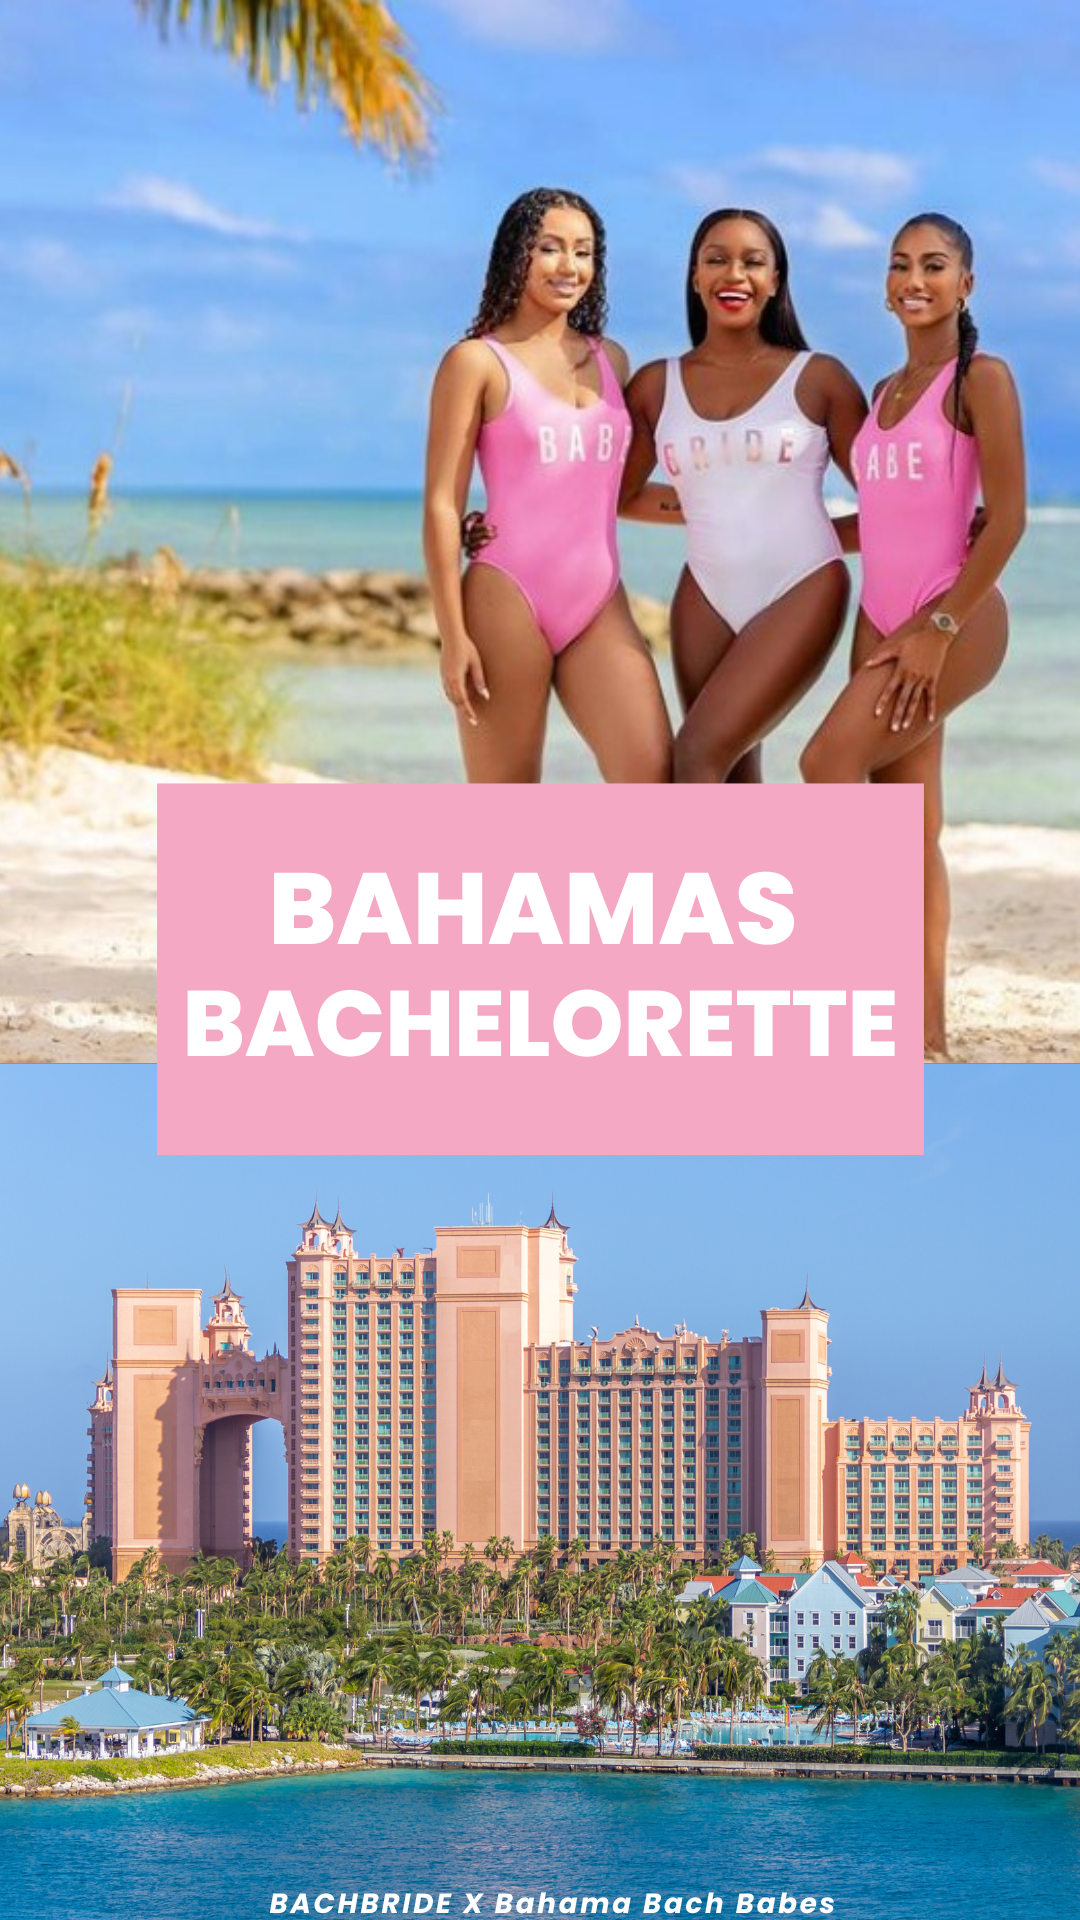 Bahamas Bachelorette Guide